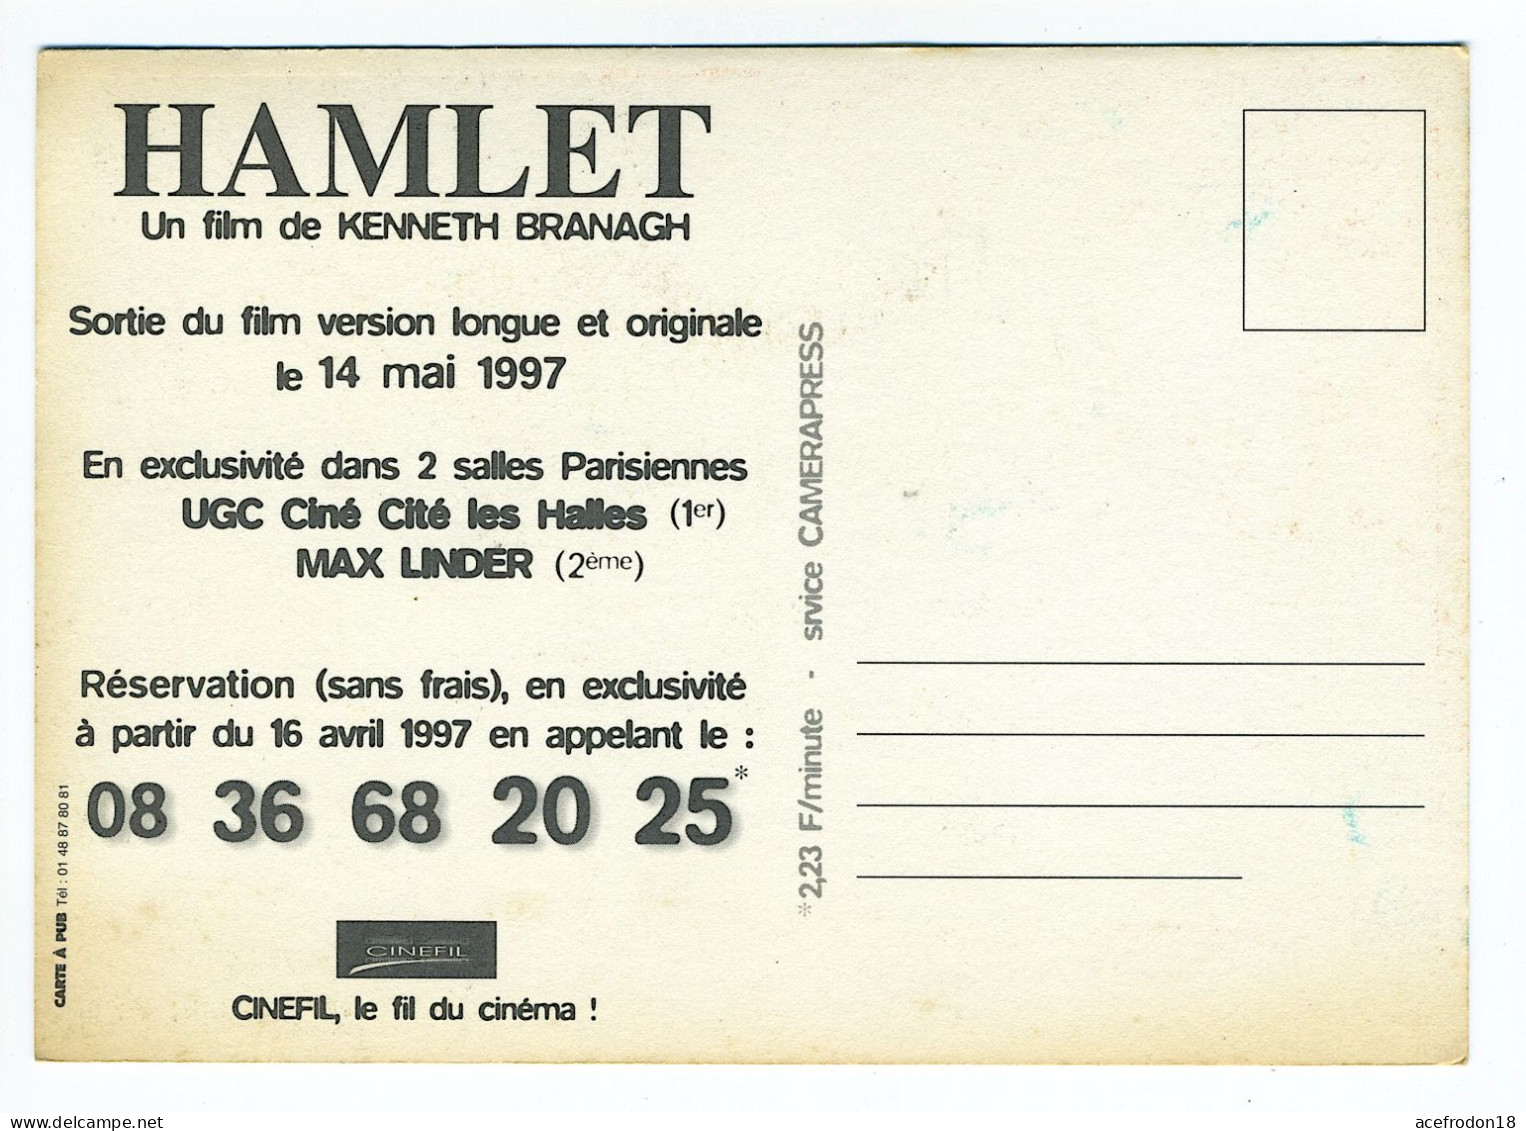 AFFICHES DE FILM - HAMLET FILM DE KENNETH BRANAGH 1997 - Plakate Auf Karten